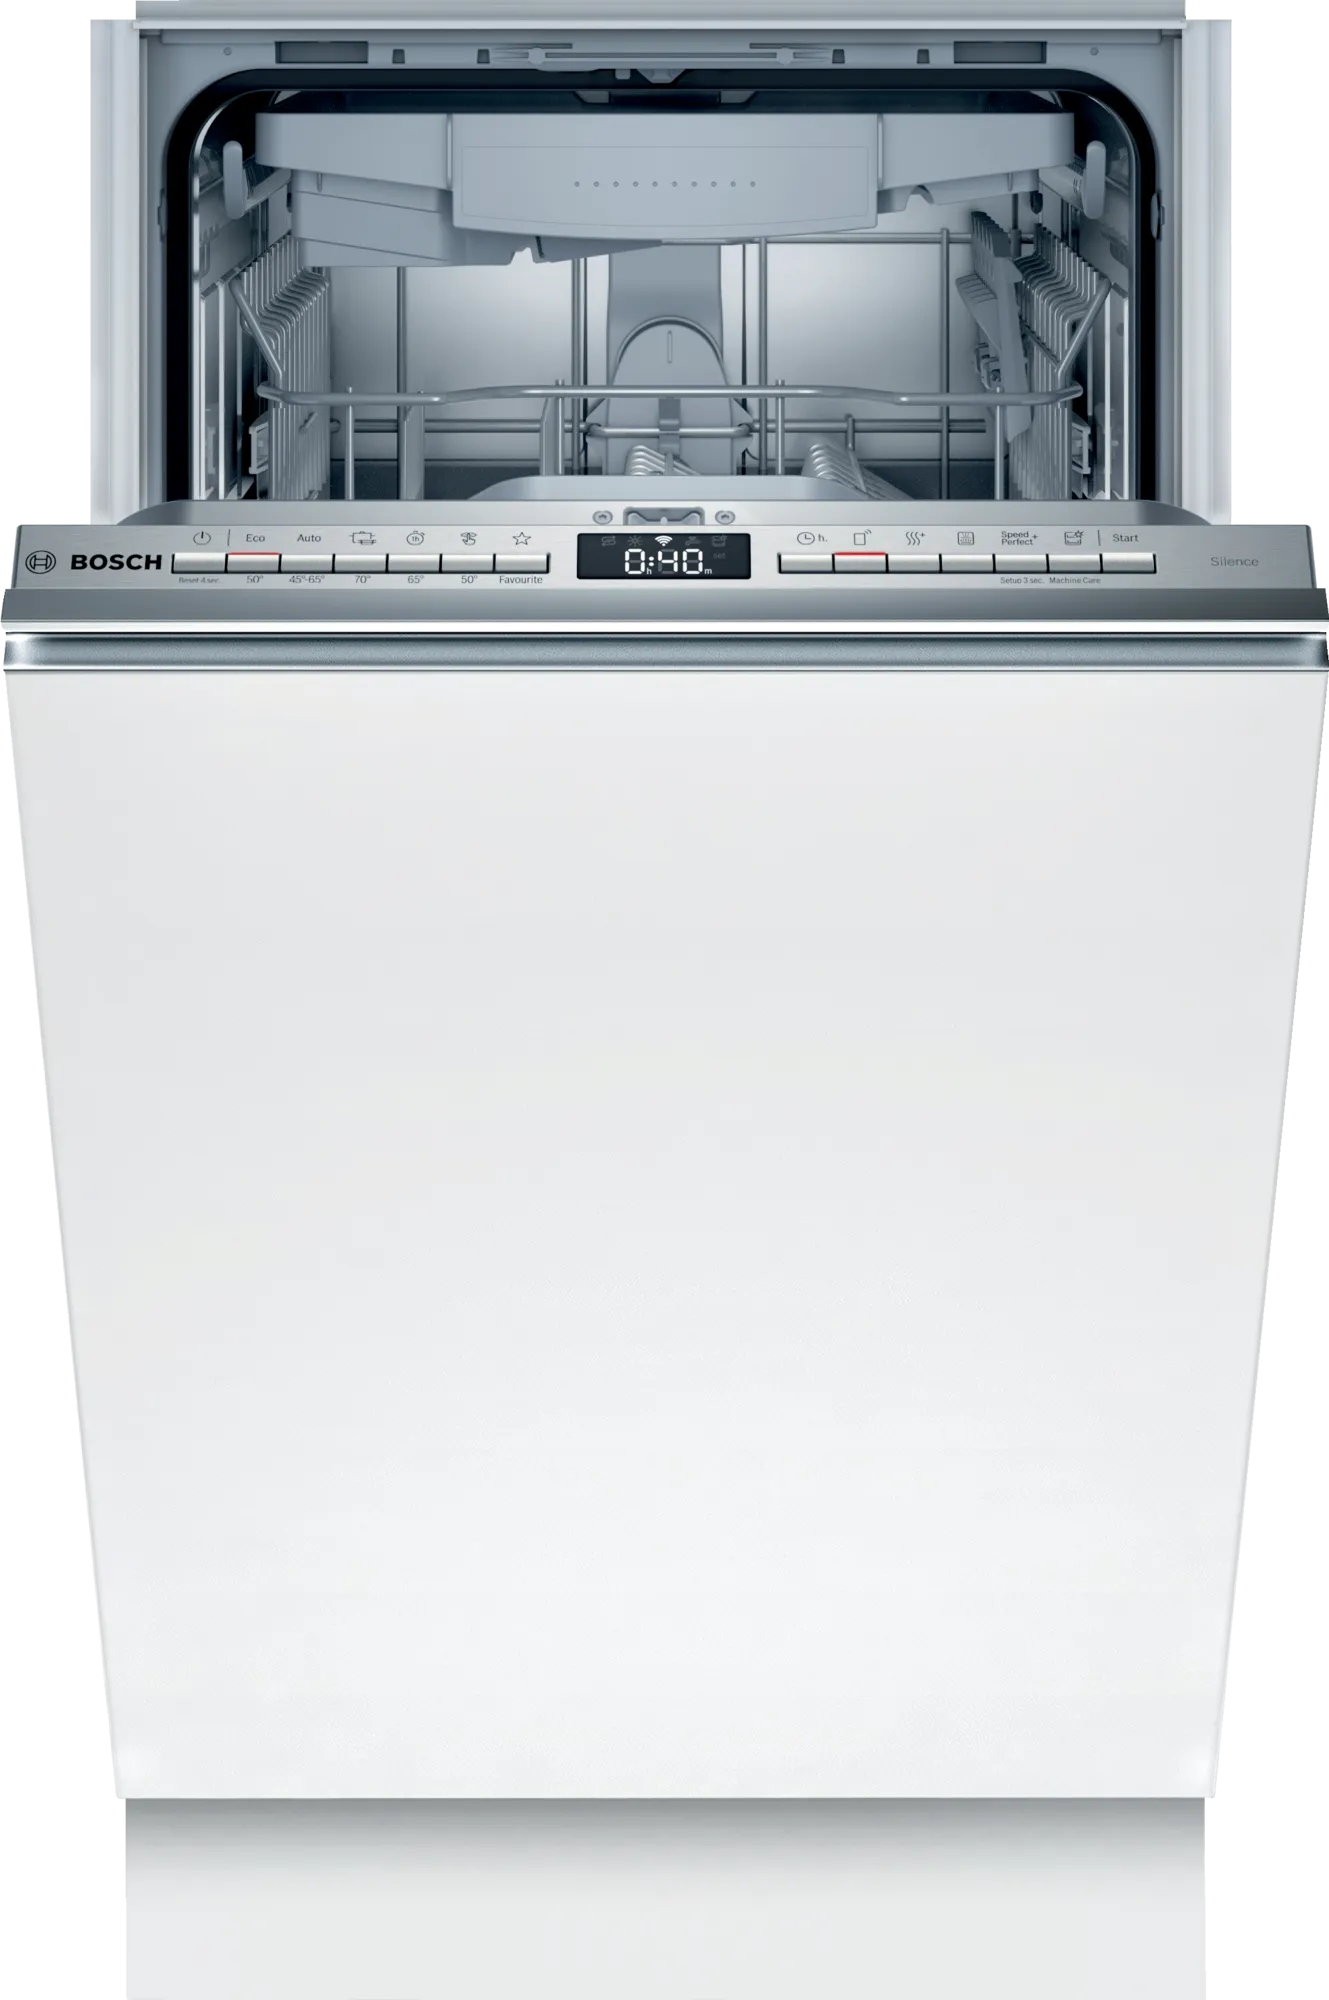 Bosch spv6zmx23e. Gorenje gv520e10. Встраиваемая посудомоечная машина Bosch SMV 4evx14 e. Посудомоечная машина Bosch 60 встраиваемая. Встраиваемая посудомоечная машина Bosch smv4hvx31e.